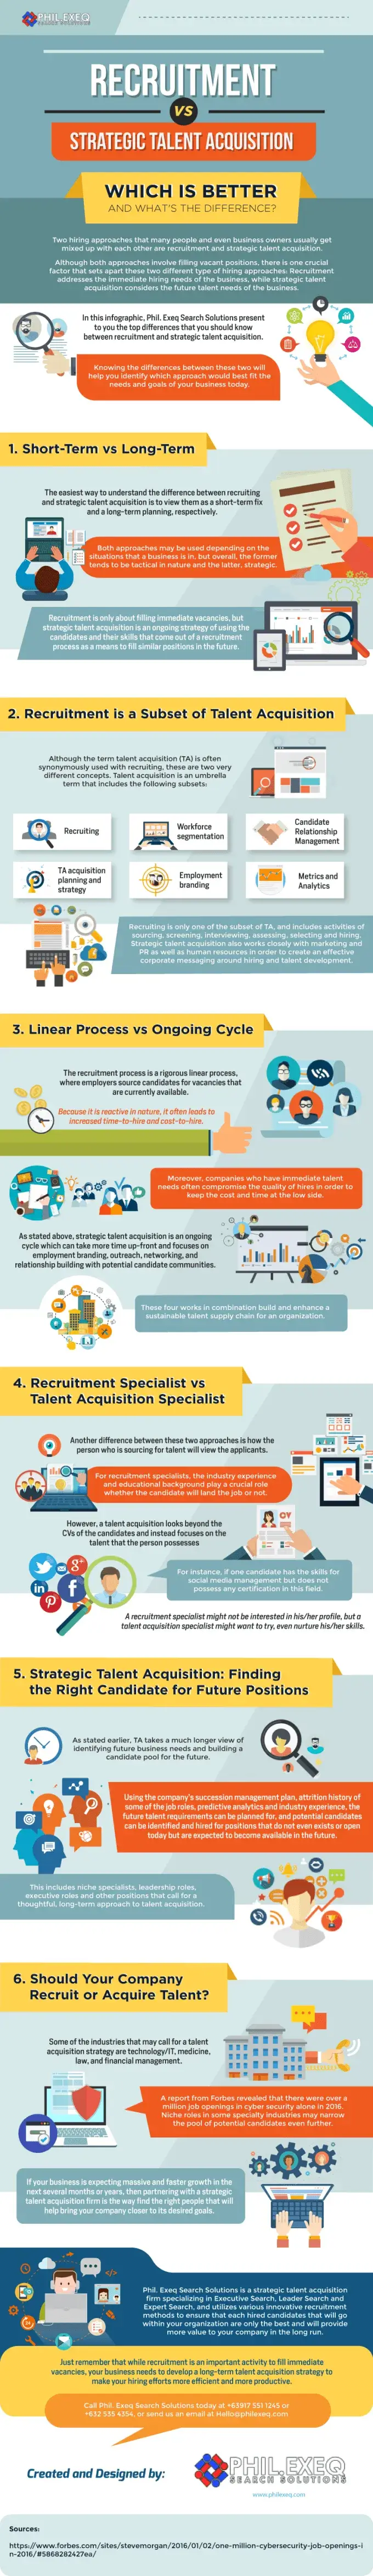 Talent Acquisition vs. Recruitment: Infographic